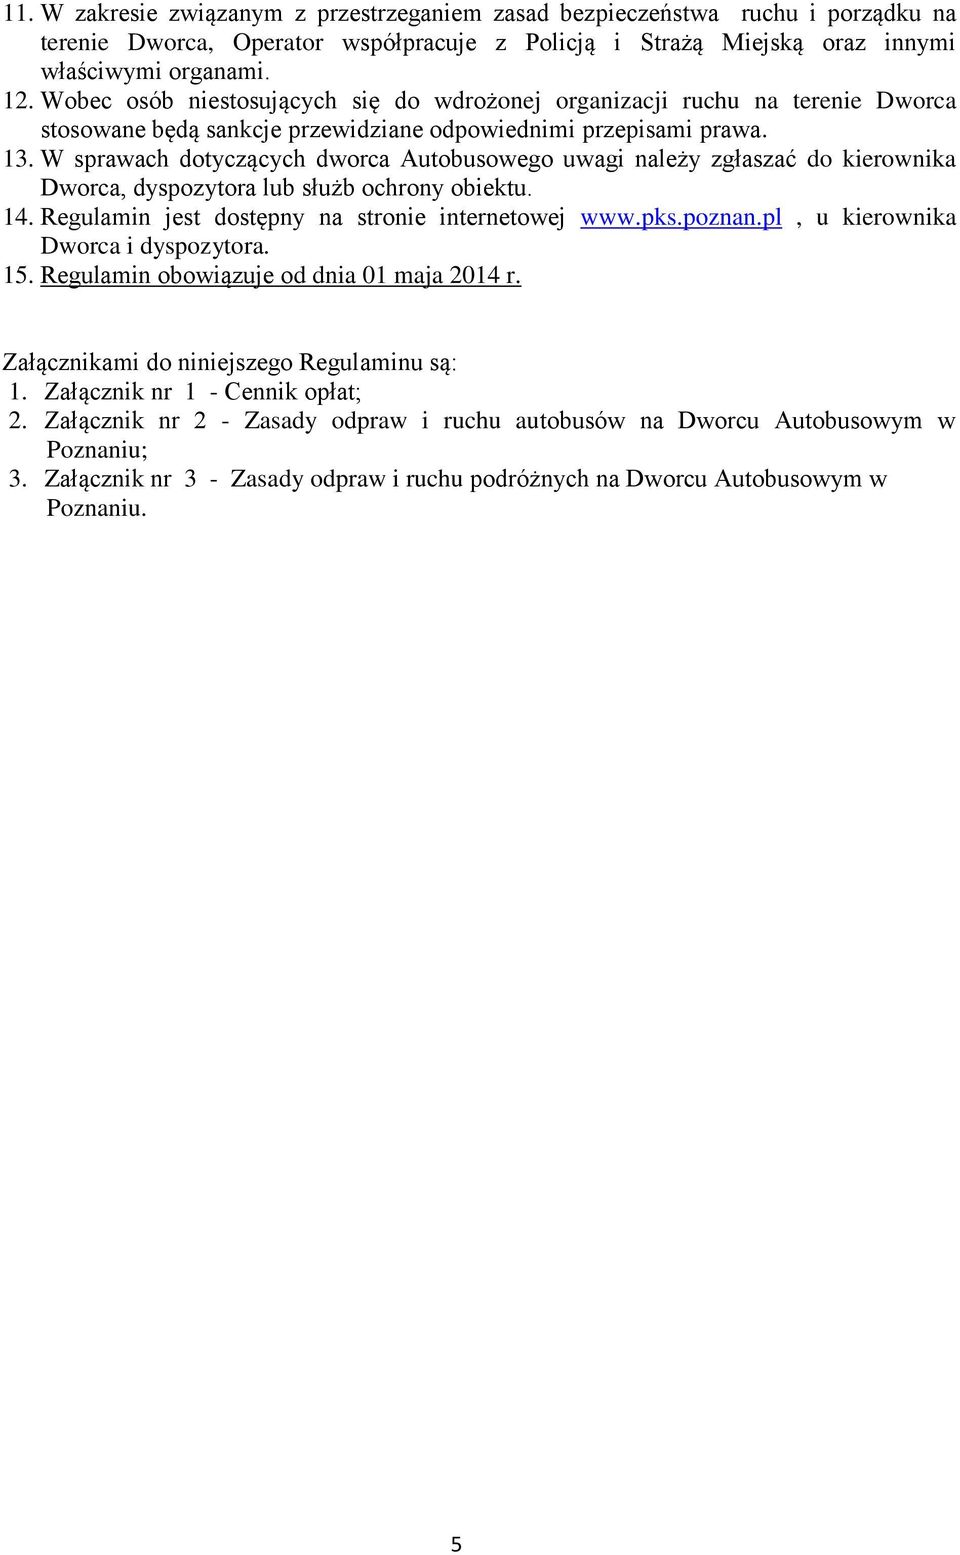 W sprawach dotyczących dworca Autobusowego uwagi należy zgłaszać do kierownika Dworca, dyspozytora lub służb ochrony obiektu. 14. Regulamin jest dostępny na stronie internetowej www.pks.poznan.